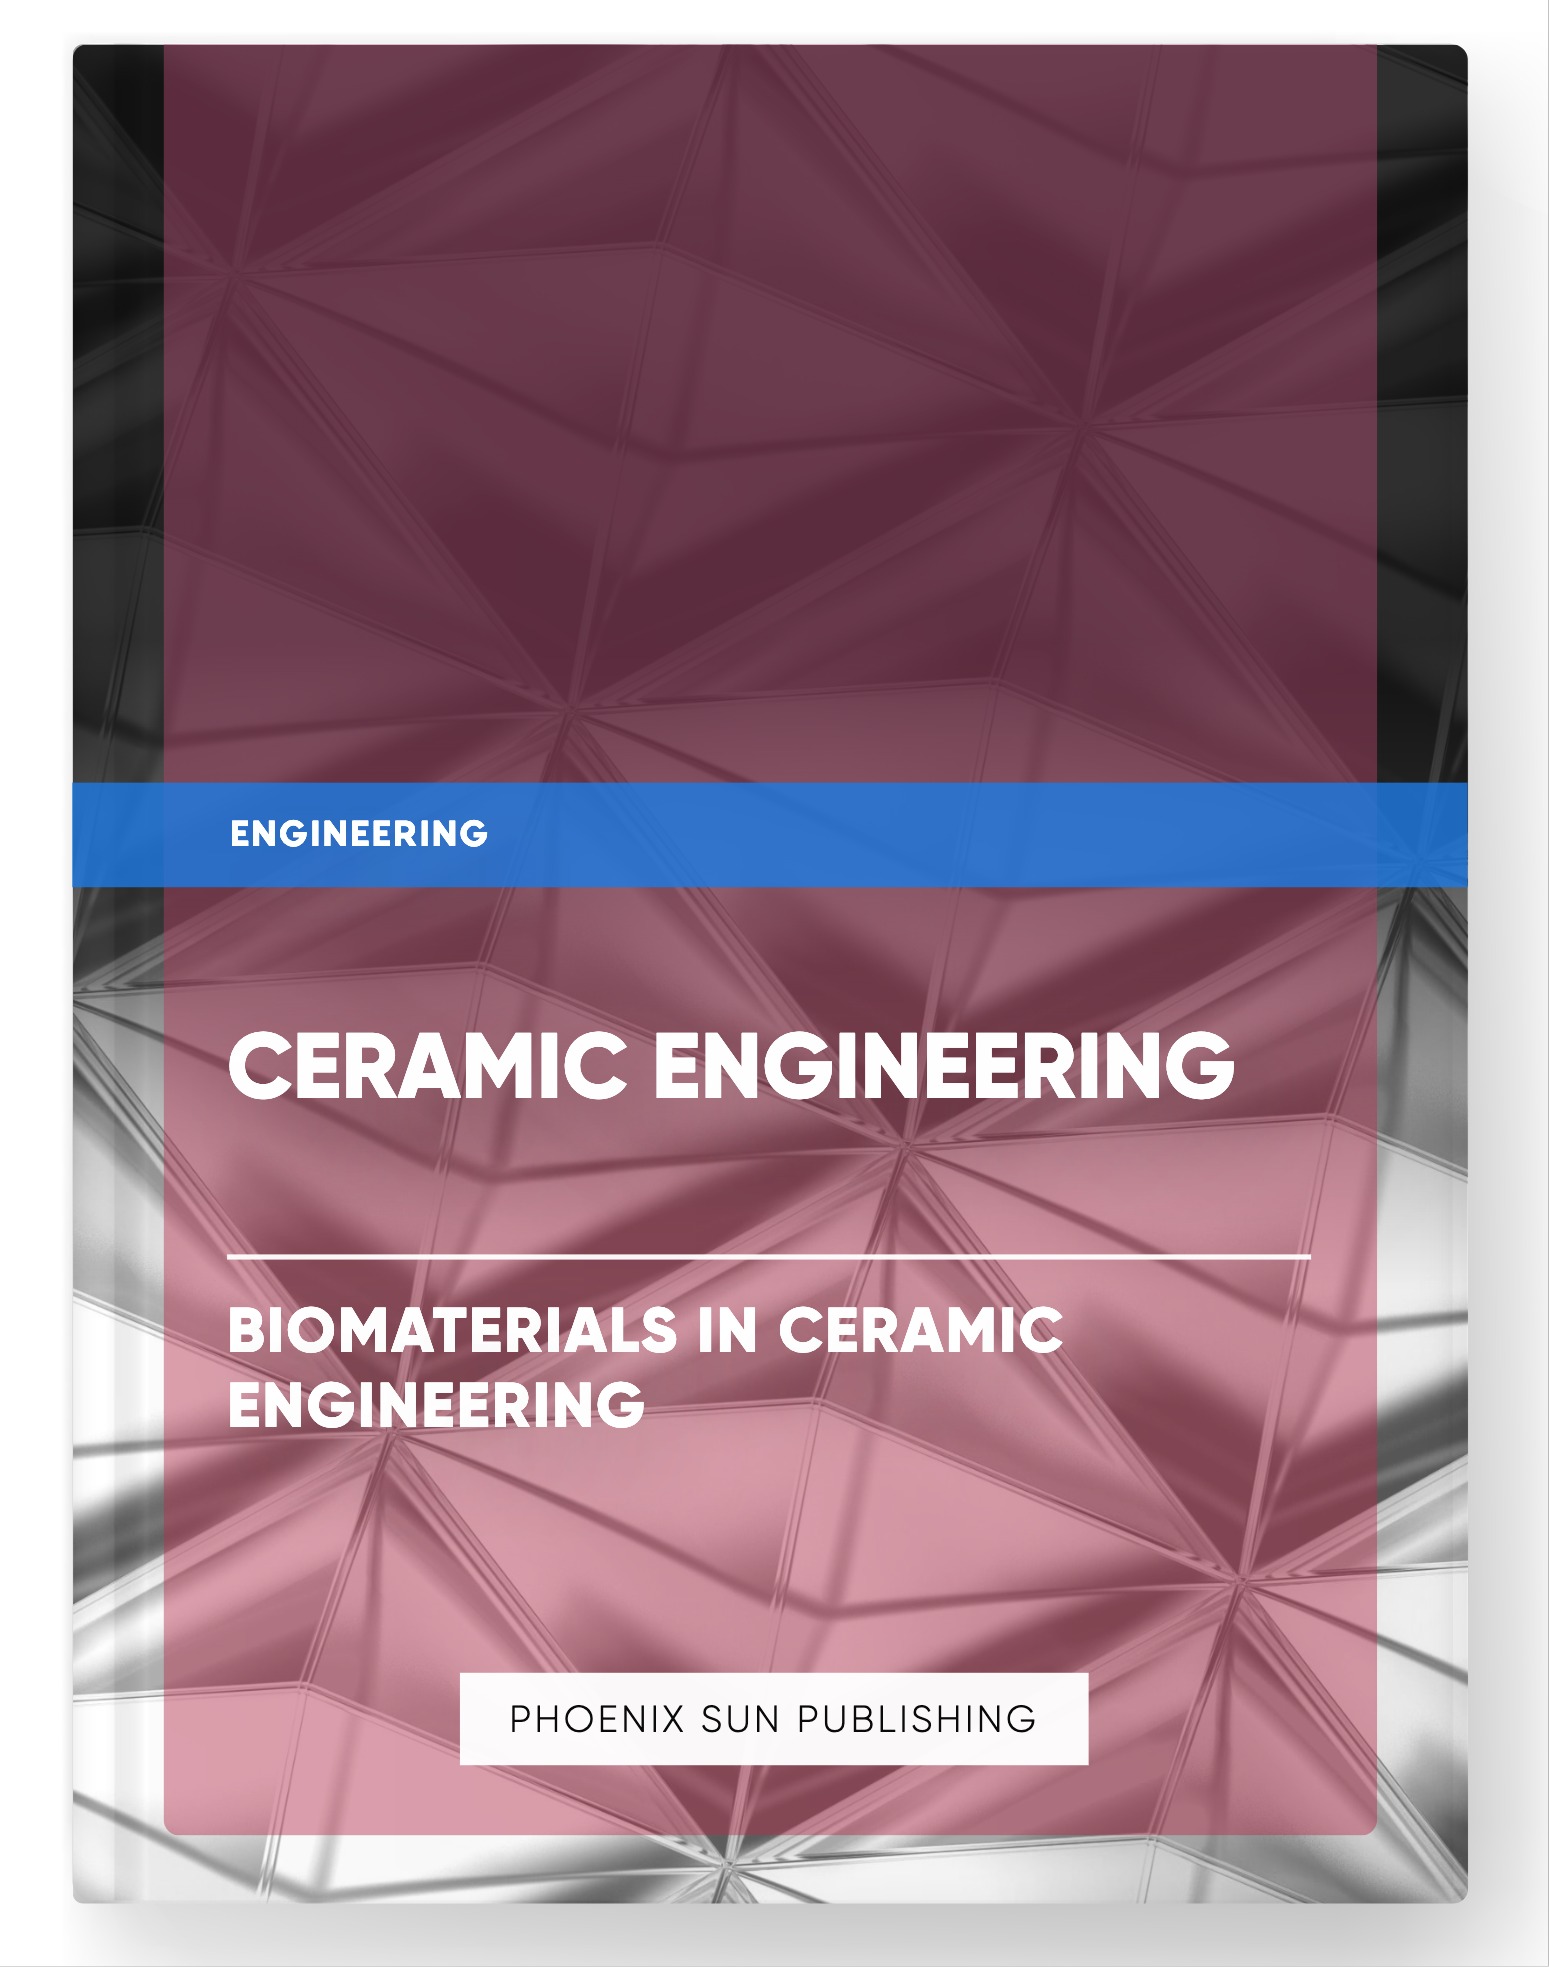 Ceramic Engineering – Biomaterials in Ceramic Engineering